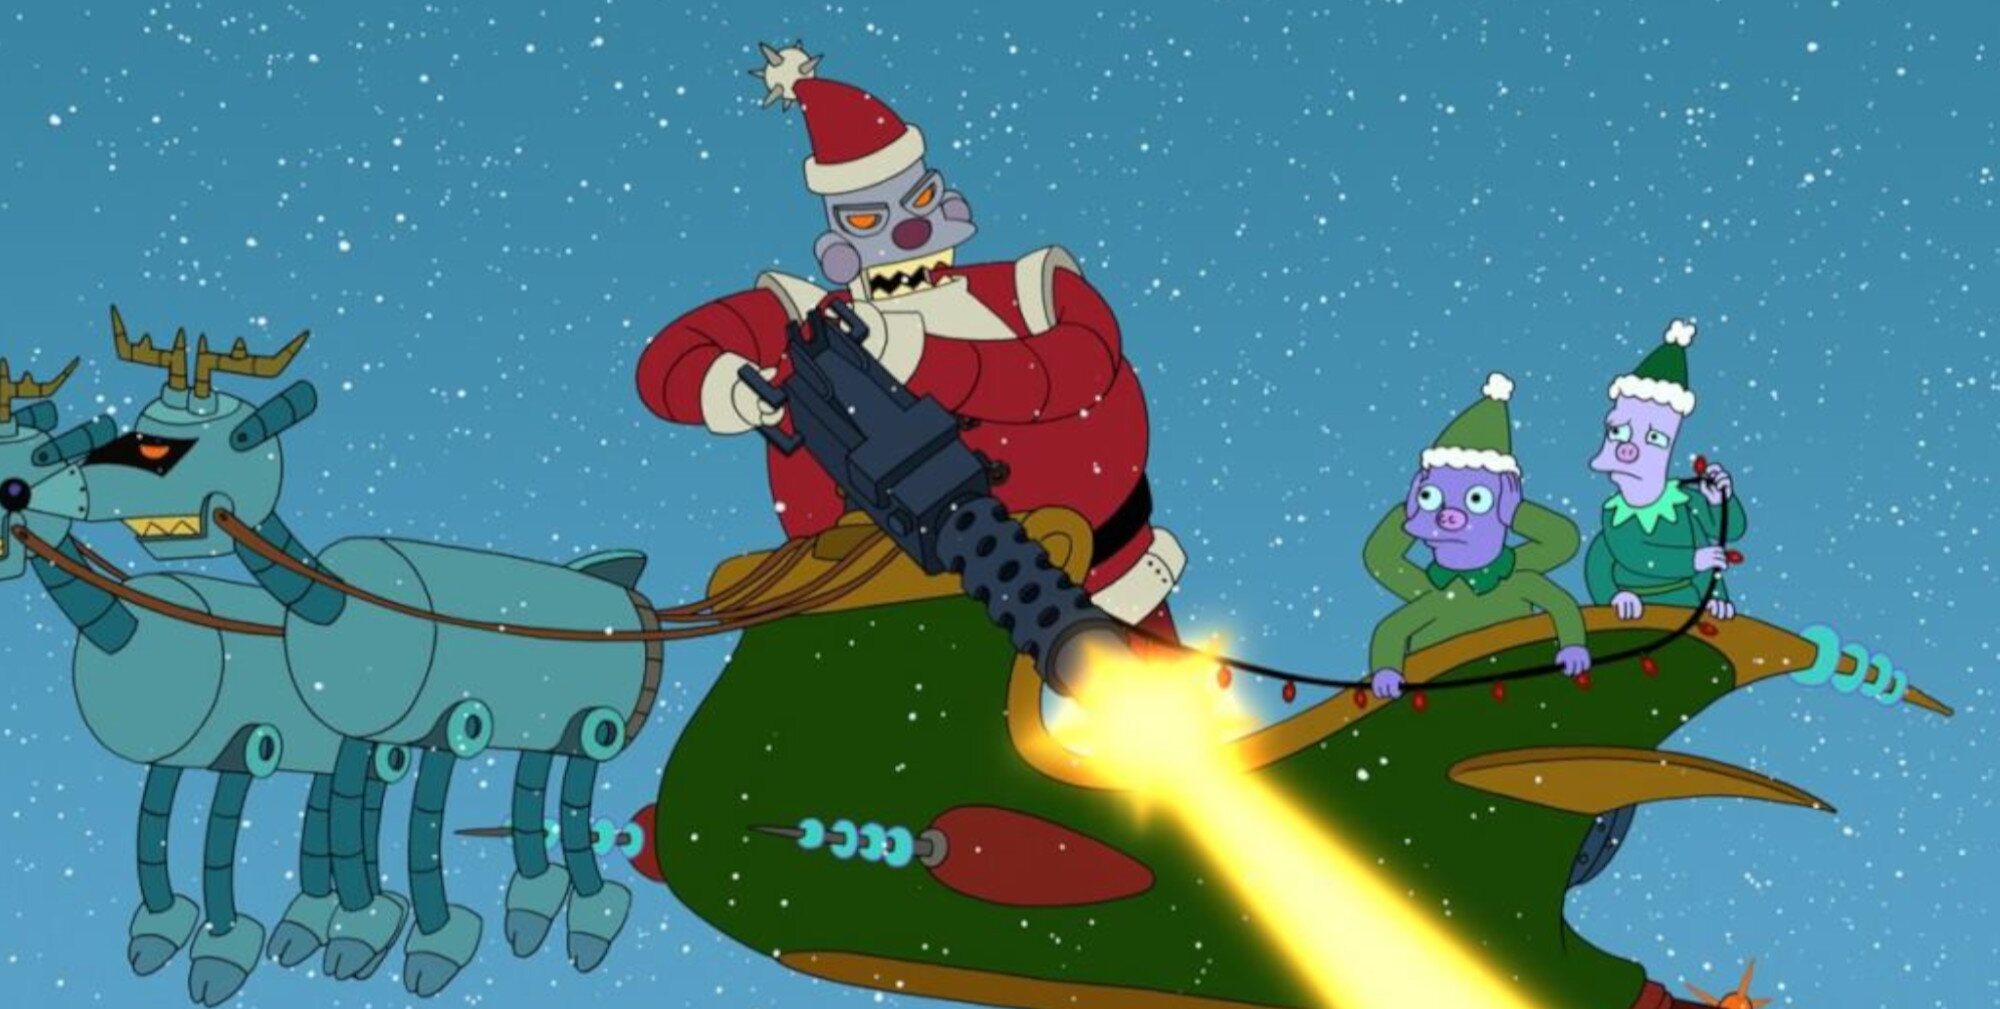 Robo Santa Claus, la versión malvada de Papá Noel en 'Futurama'